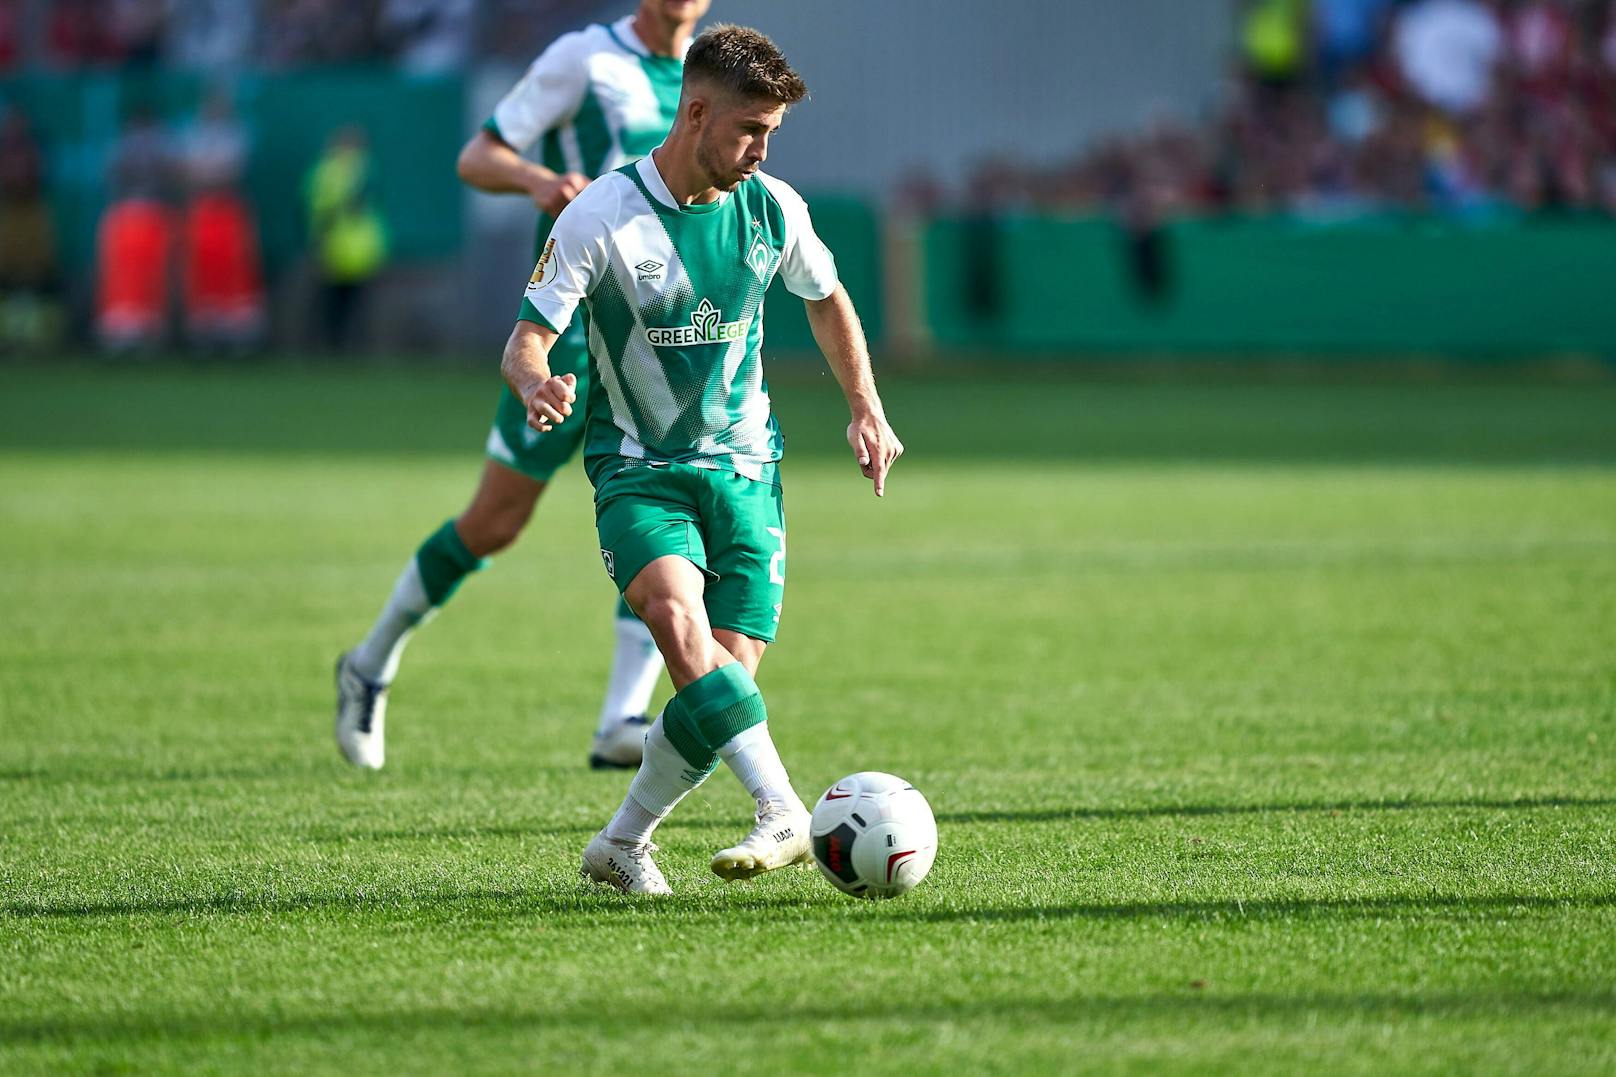 <strong>Romano Schmid (Werder Bremen)</strong> Der Mittelfeldspieler wird bei Werder eine wichtige Rolle spielen, verhalf seiner Mannschaft mit starken Auftritten zum Aufstieg.